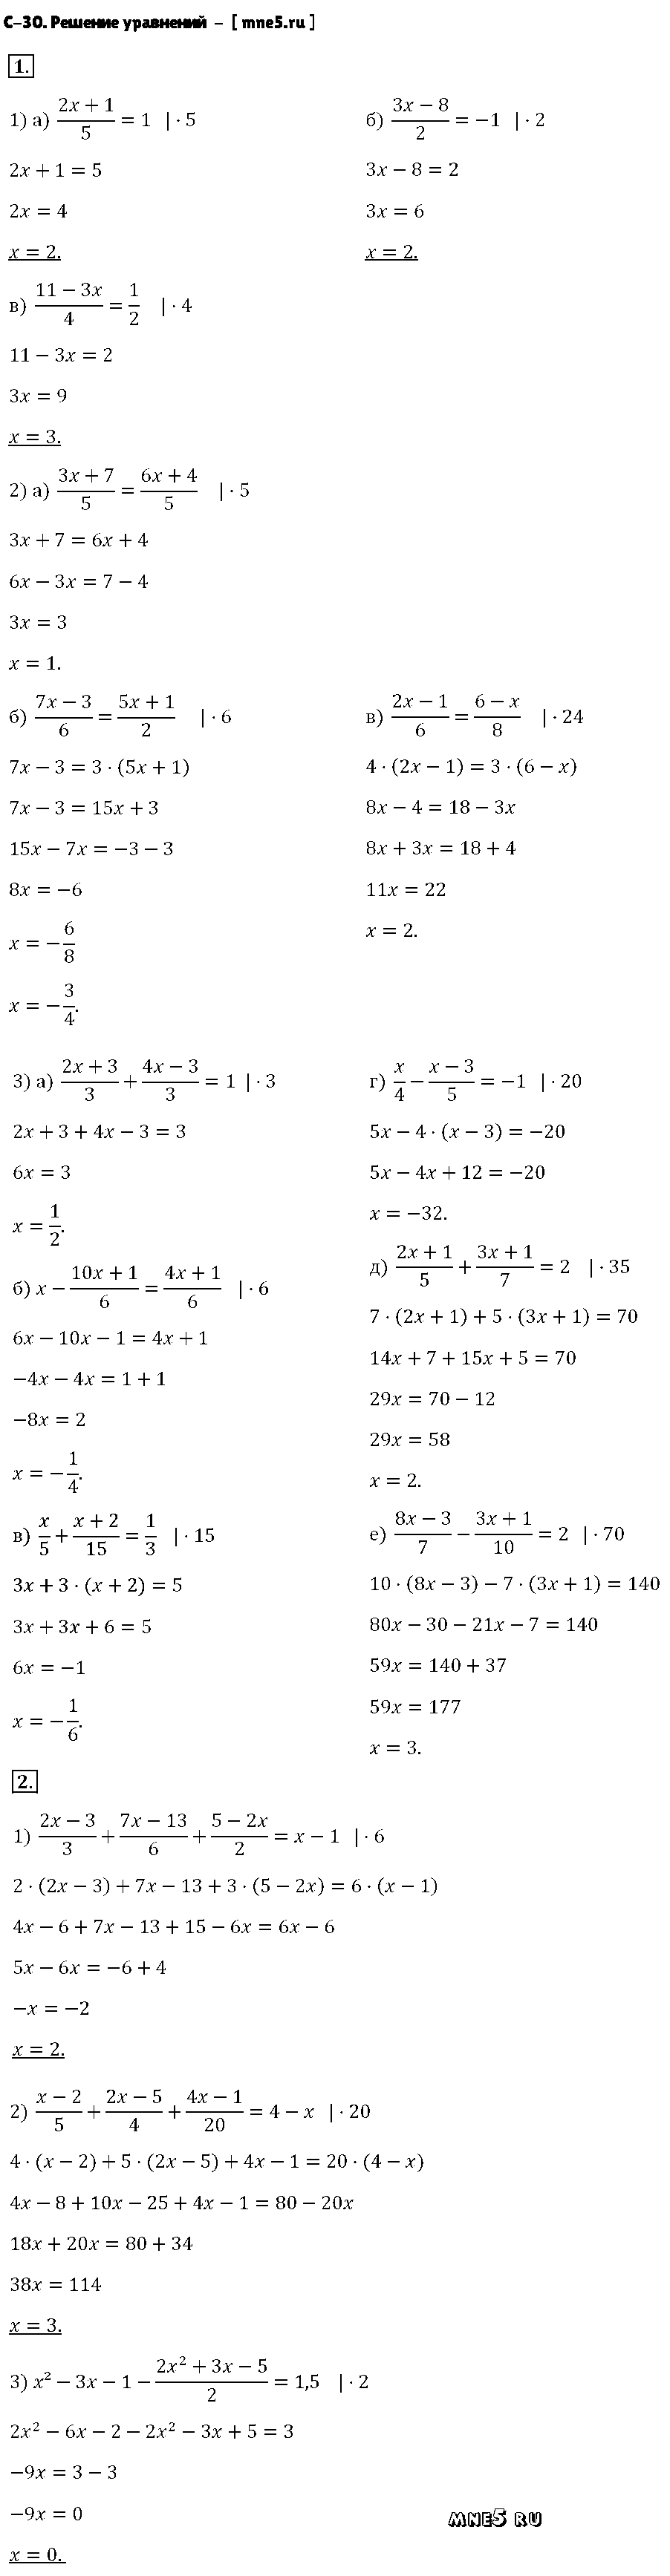 ГДЗ Алгебра 7 класс - С-30. Решение уравнений